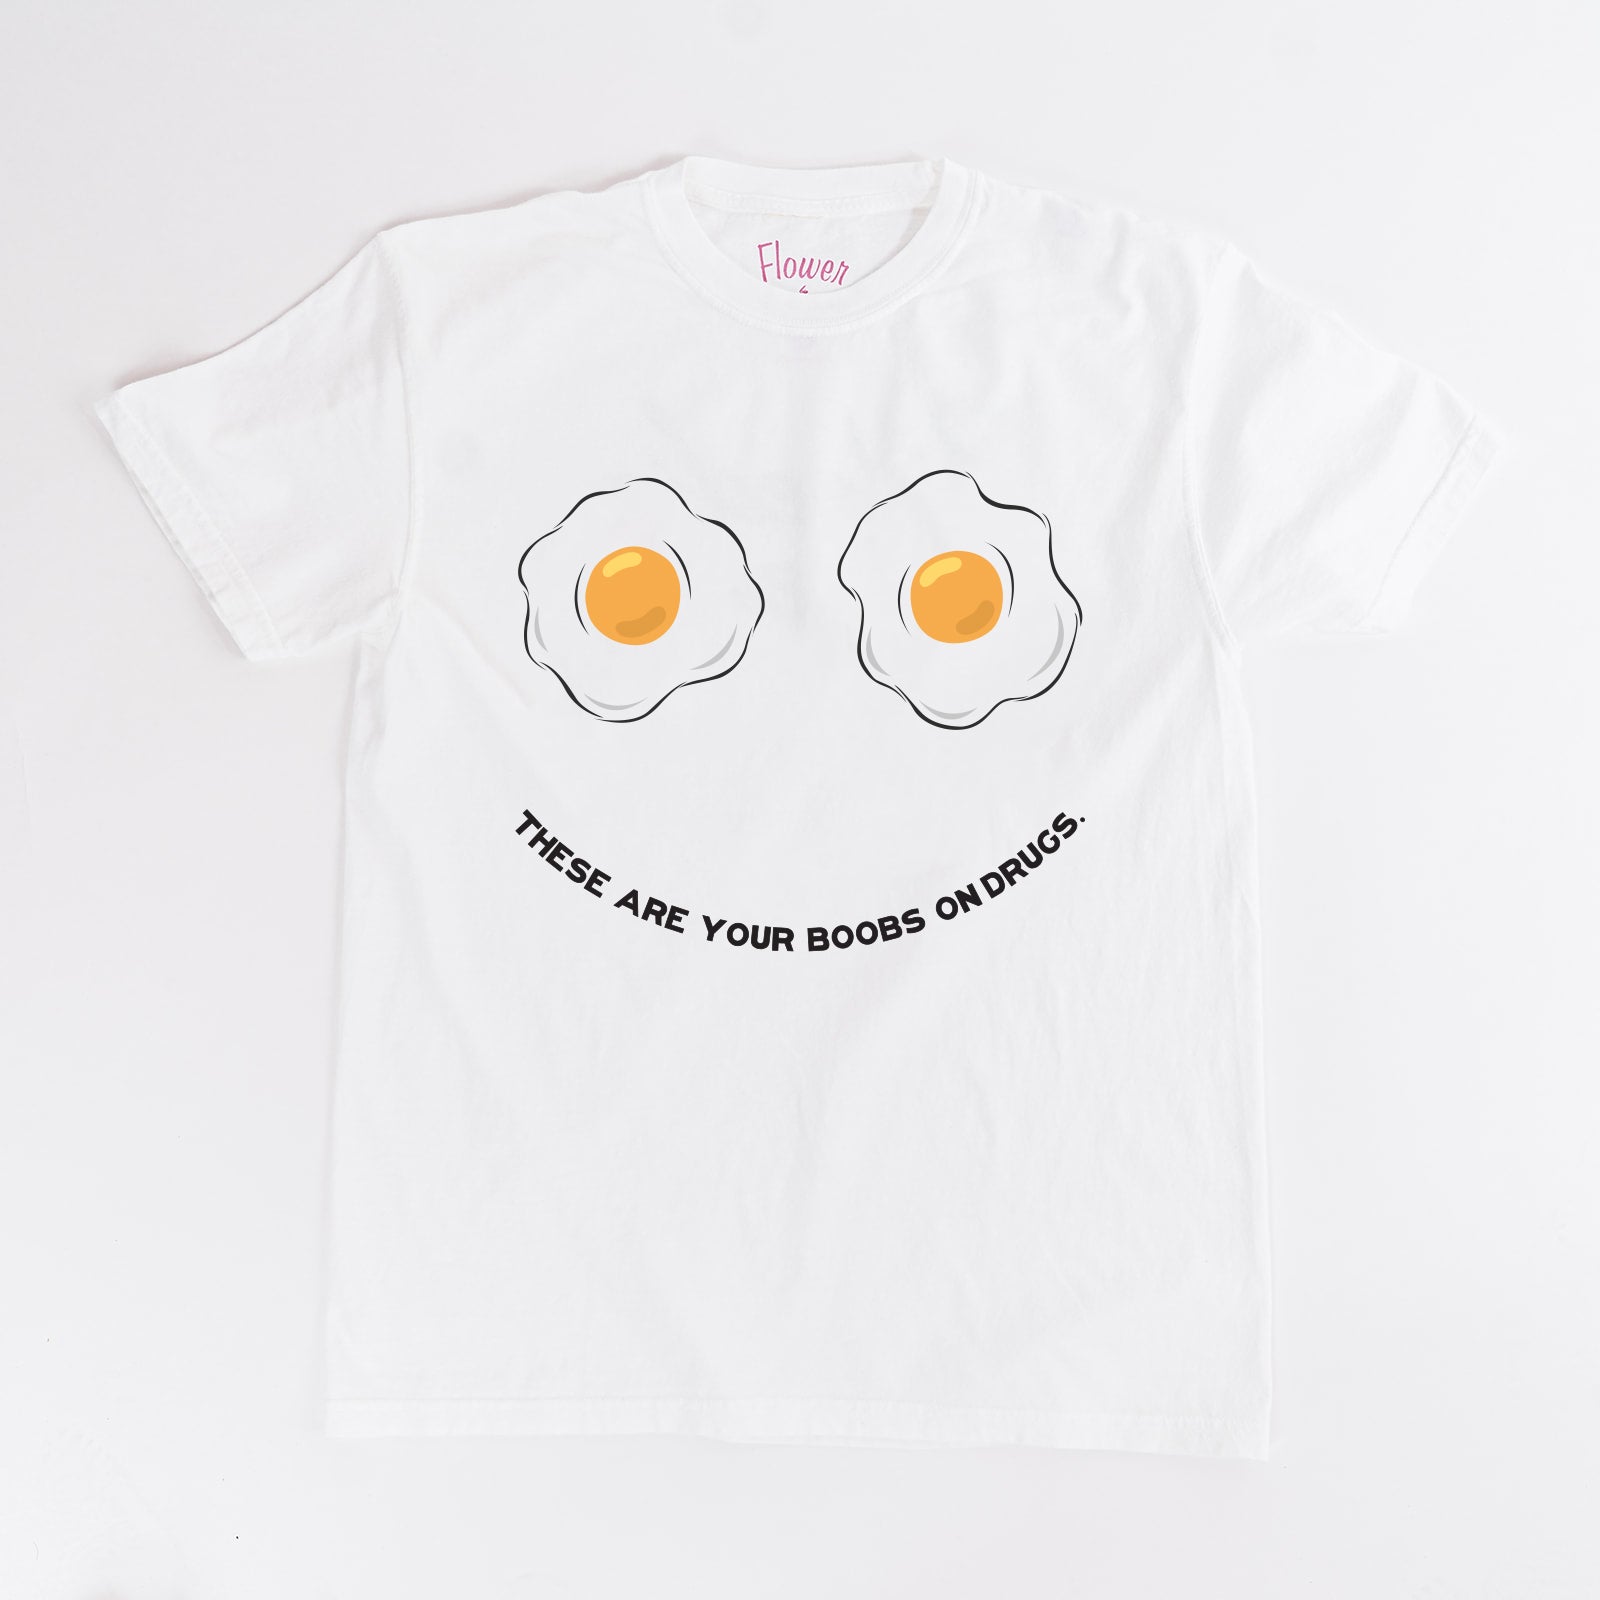 Saggy tits T-Shirts, Unique Designs